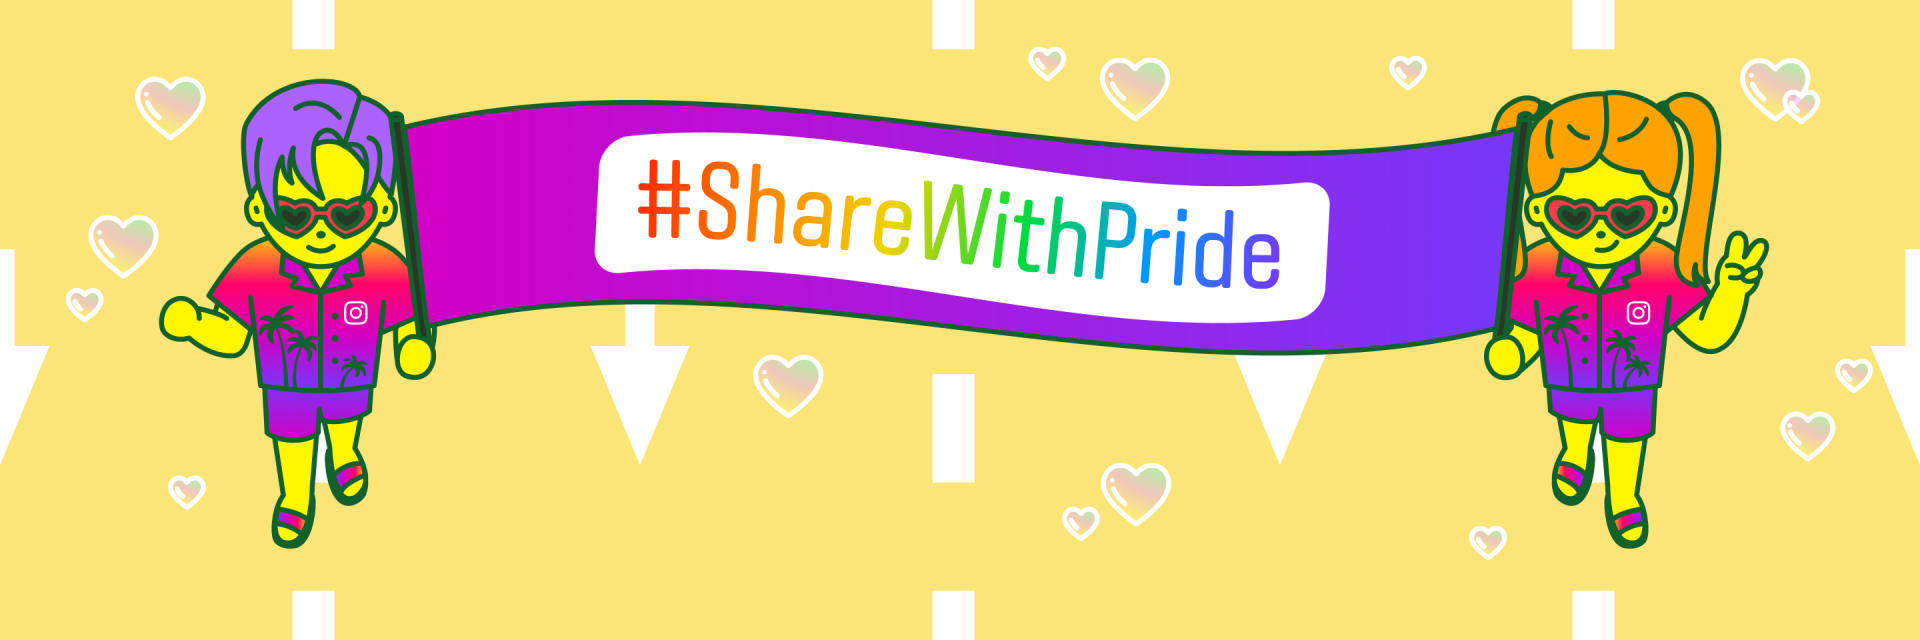 인스타그램 야자수 셔츠와 바지를 입은 두 캐릭터가 긴 보라색 현수막의 양끝을 들고 있다. 현수막의 중앙에는 "해시태그 Share With Pride"라는 글자가 써있다.